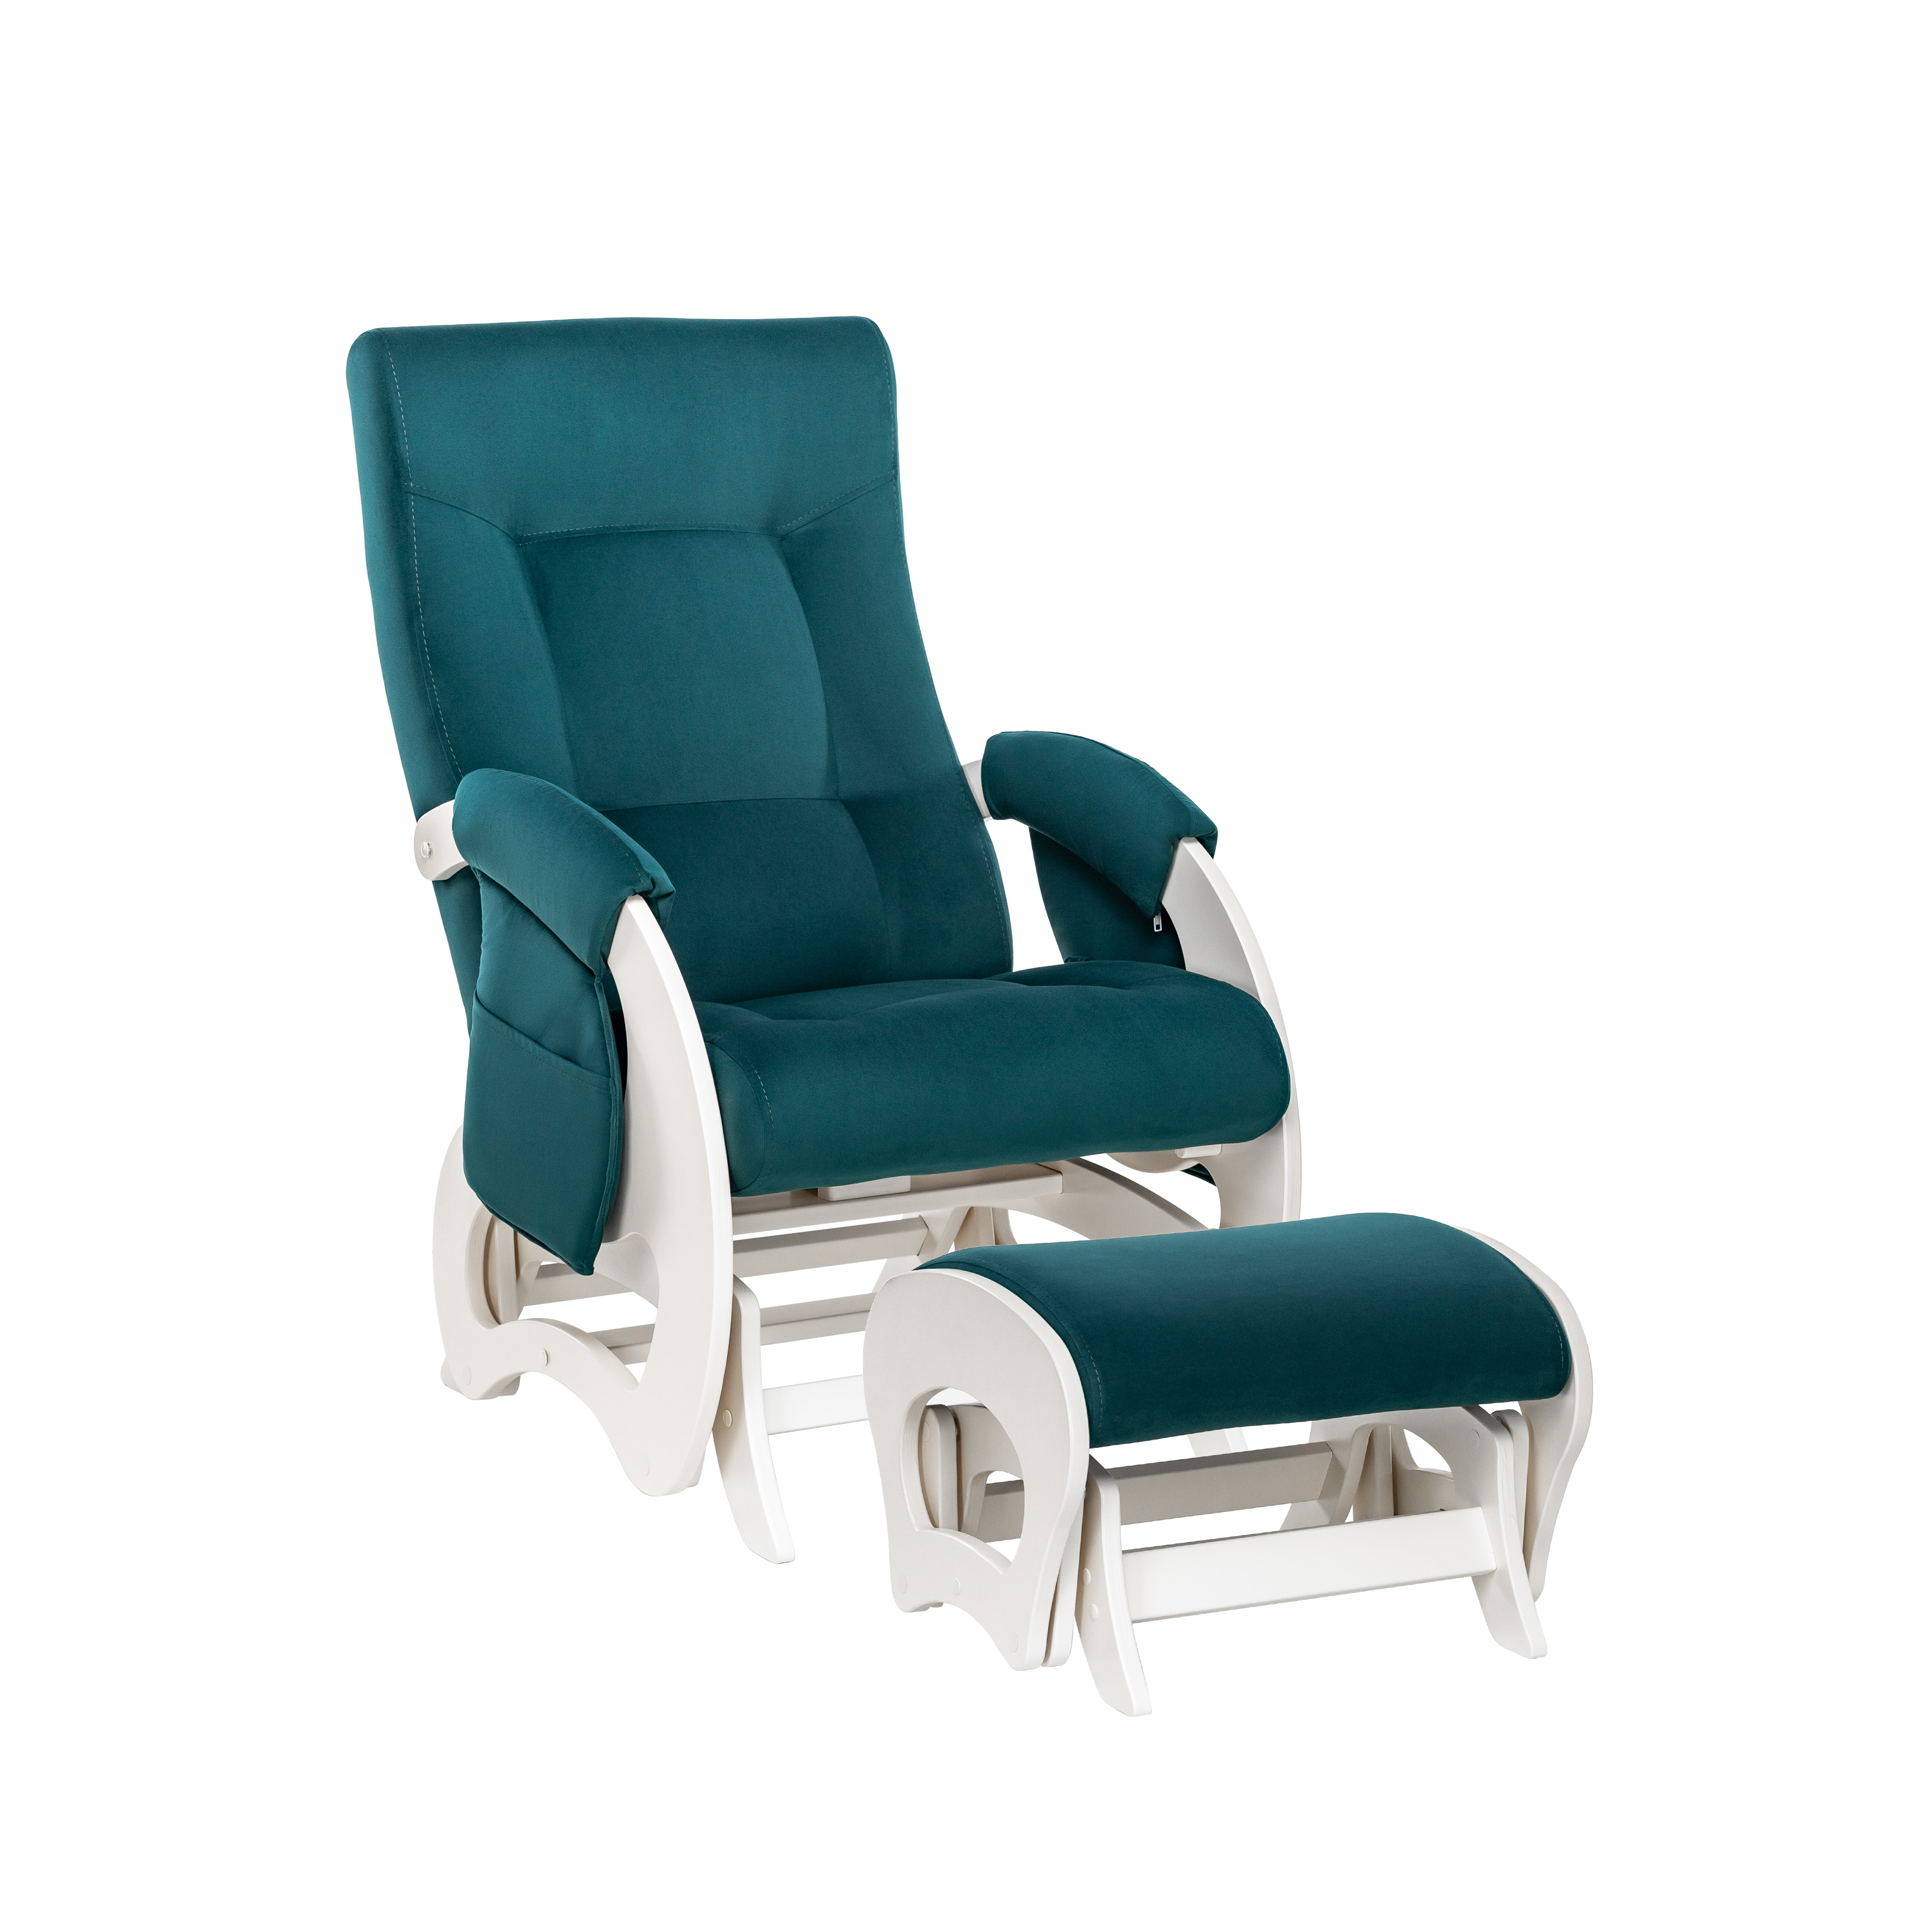 Кресло-глайдер и пуф для мамы для кормления Milli Ария Дуб молочный V20 кресло для мамы milli пуф uni молочный дуб